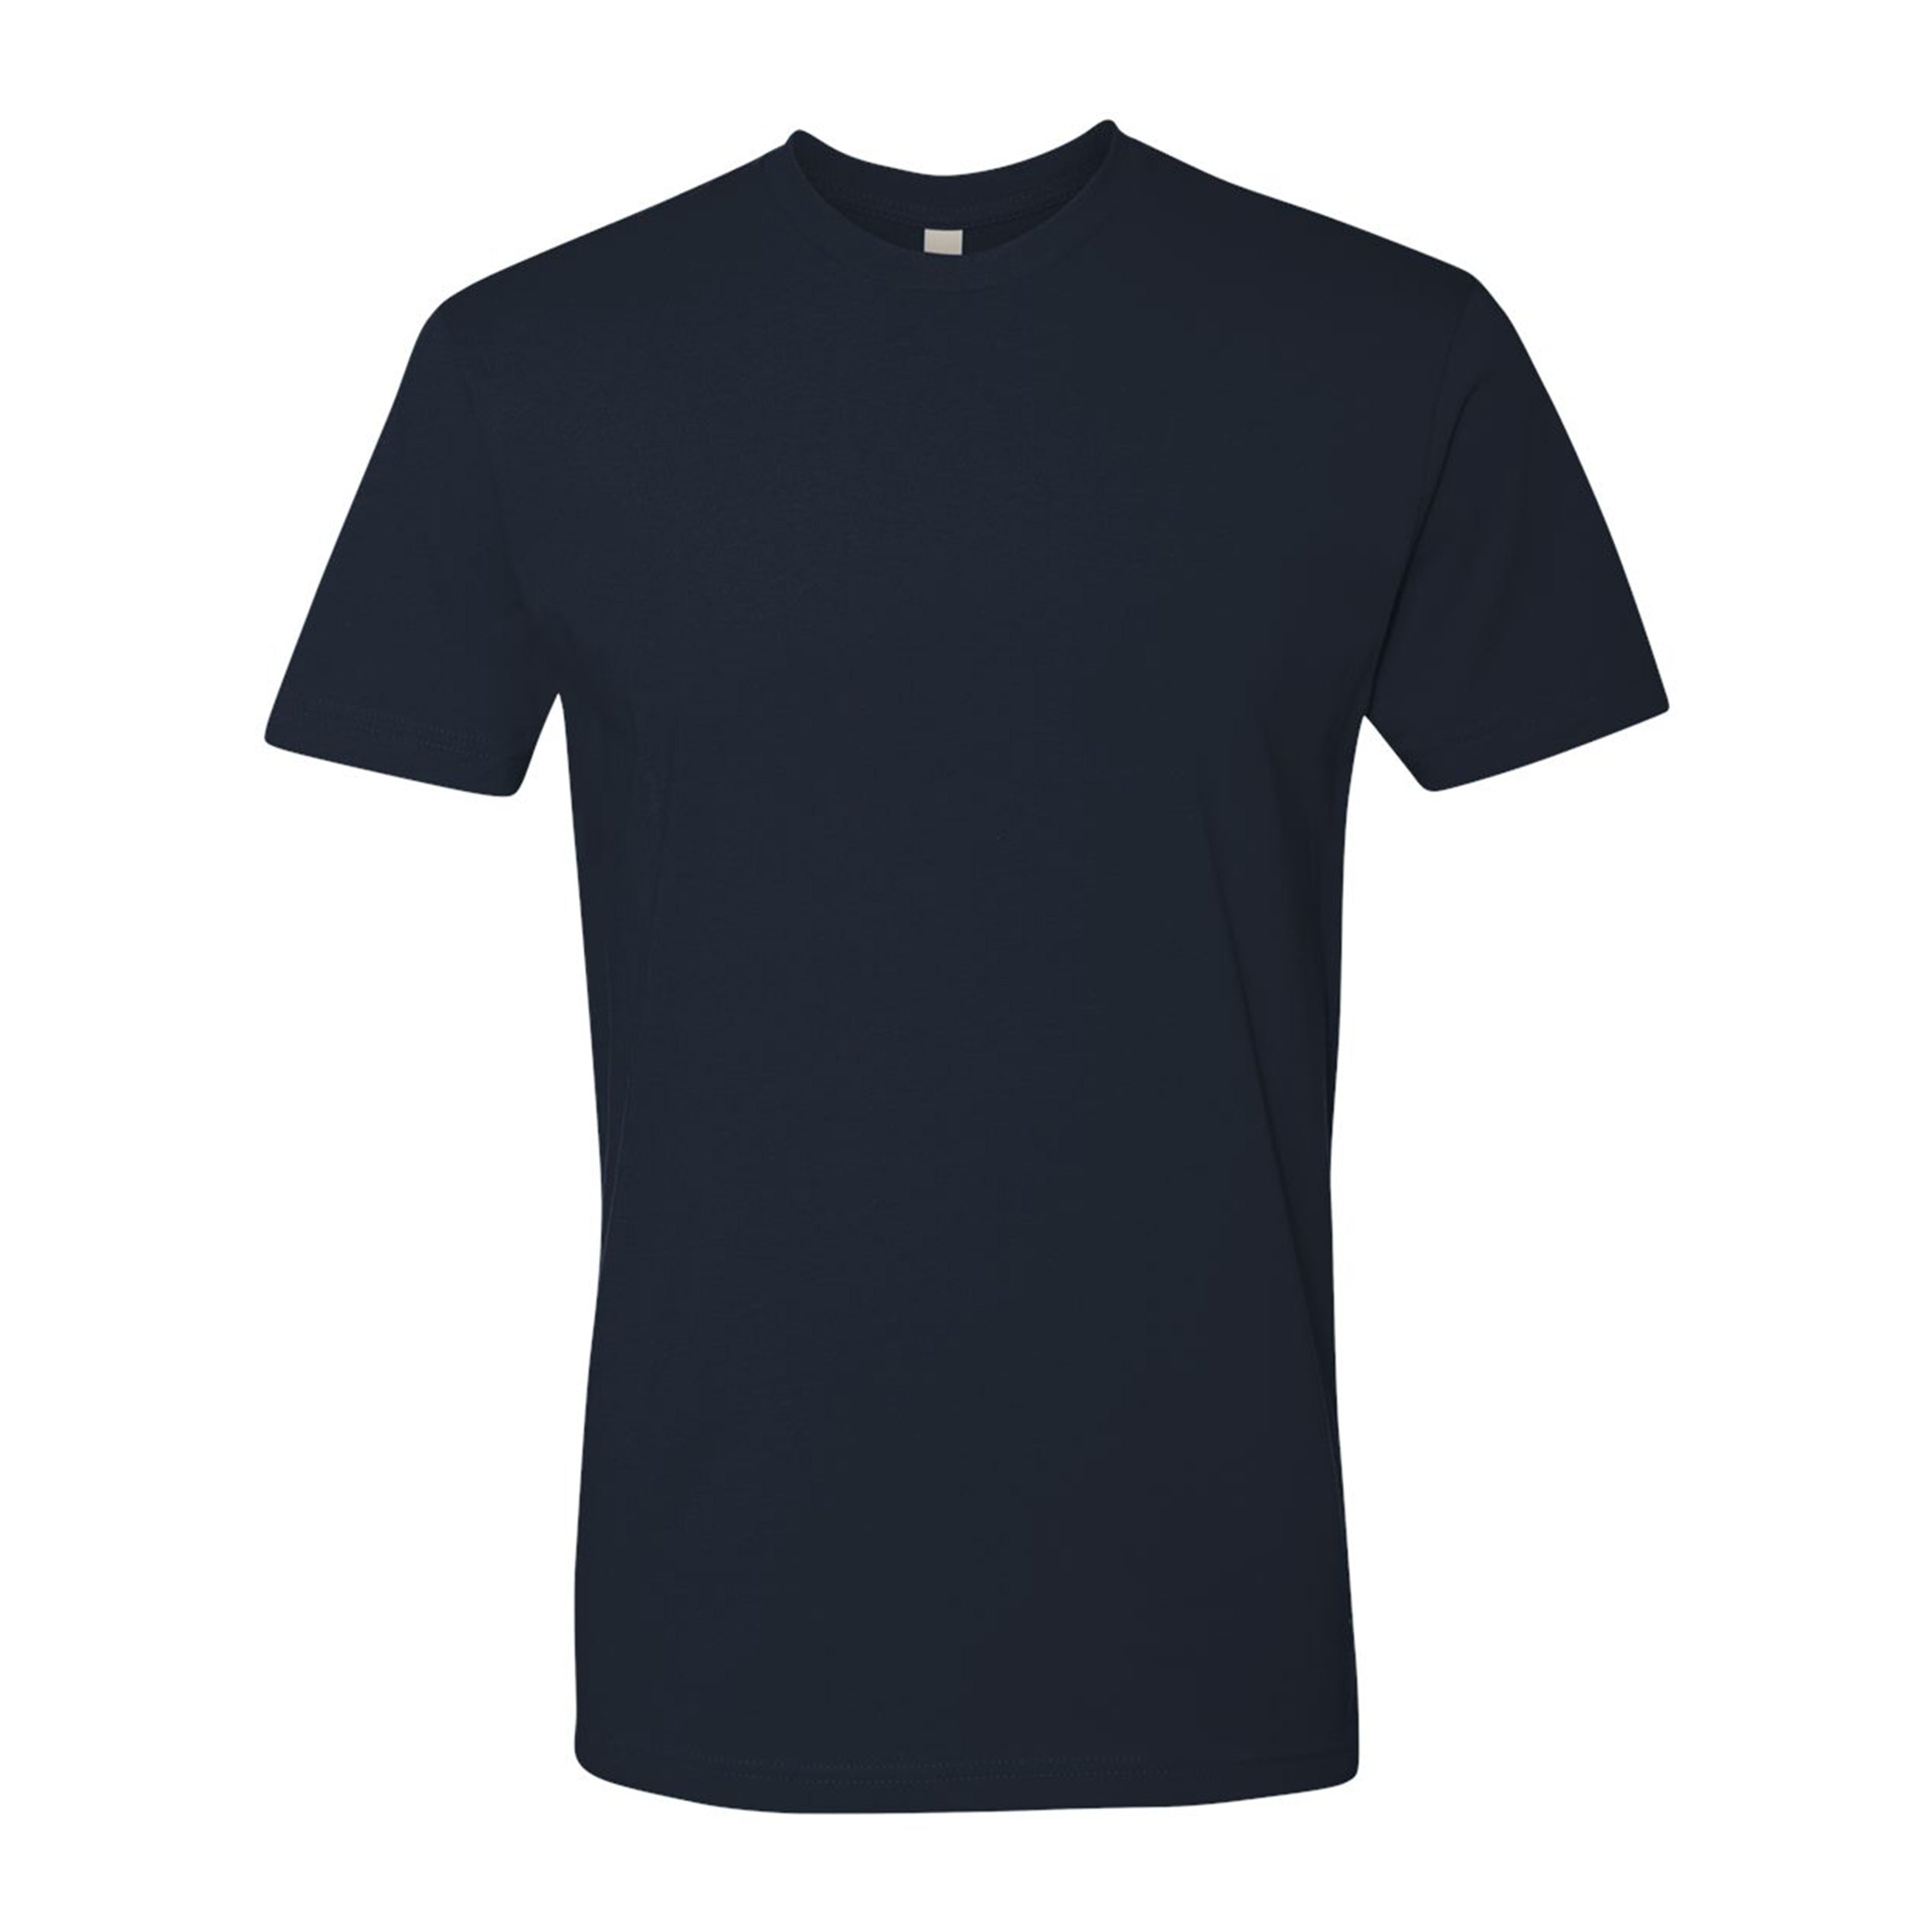 I'm Next Level Short-Sleeve Unisex T-Shirt